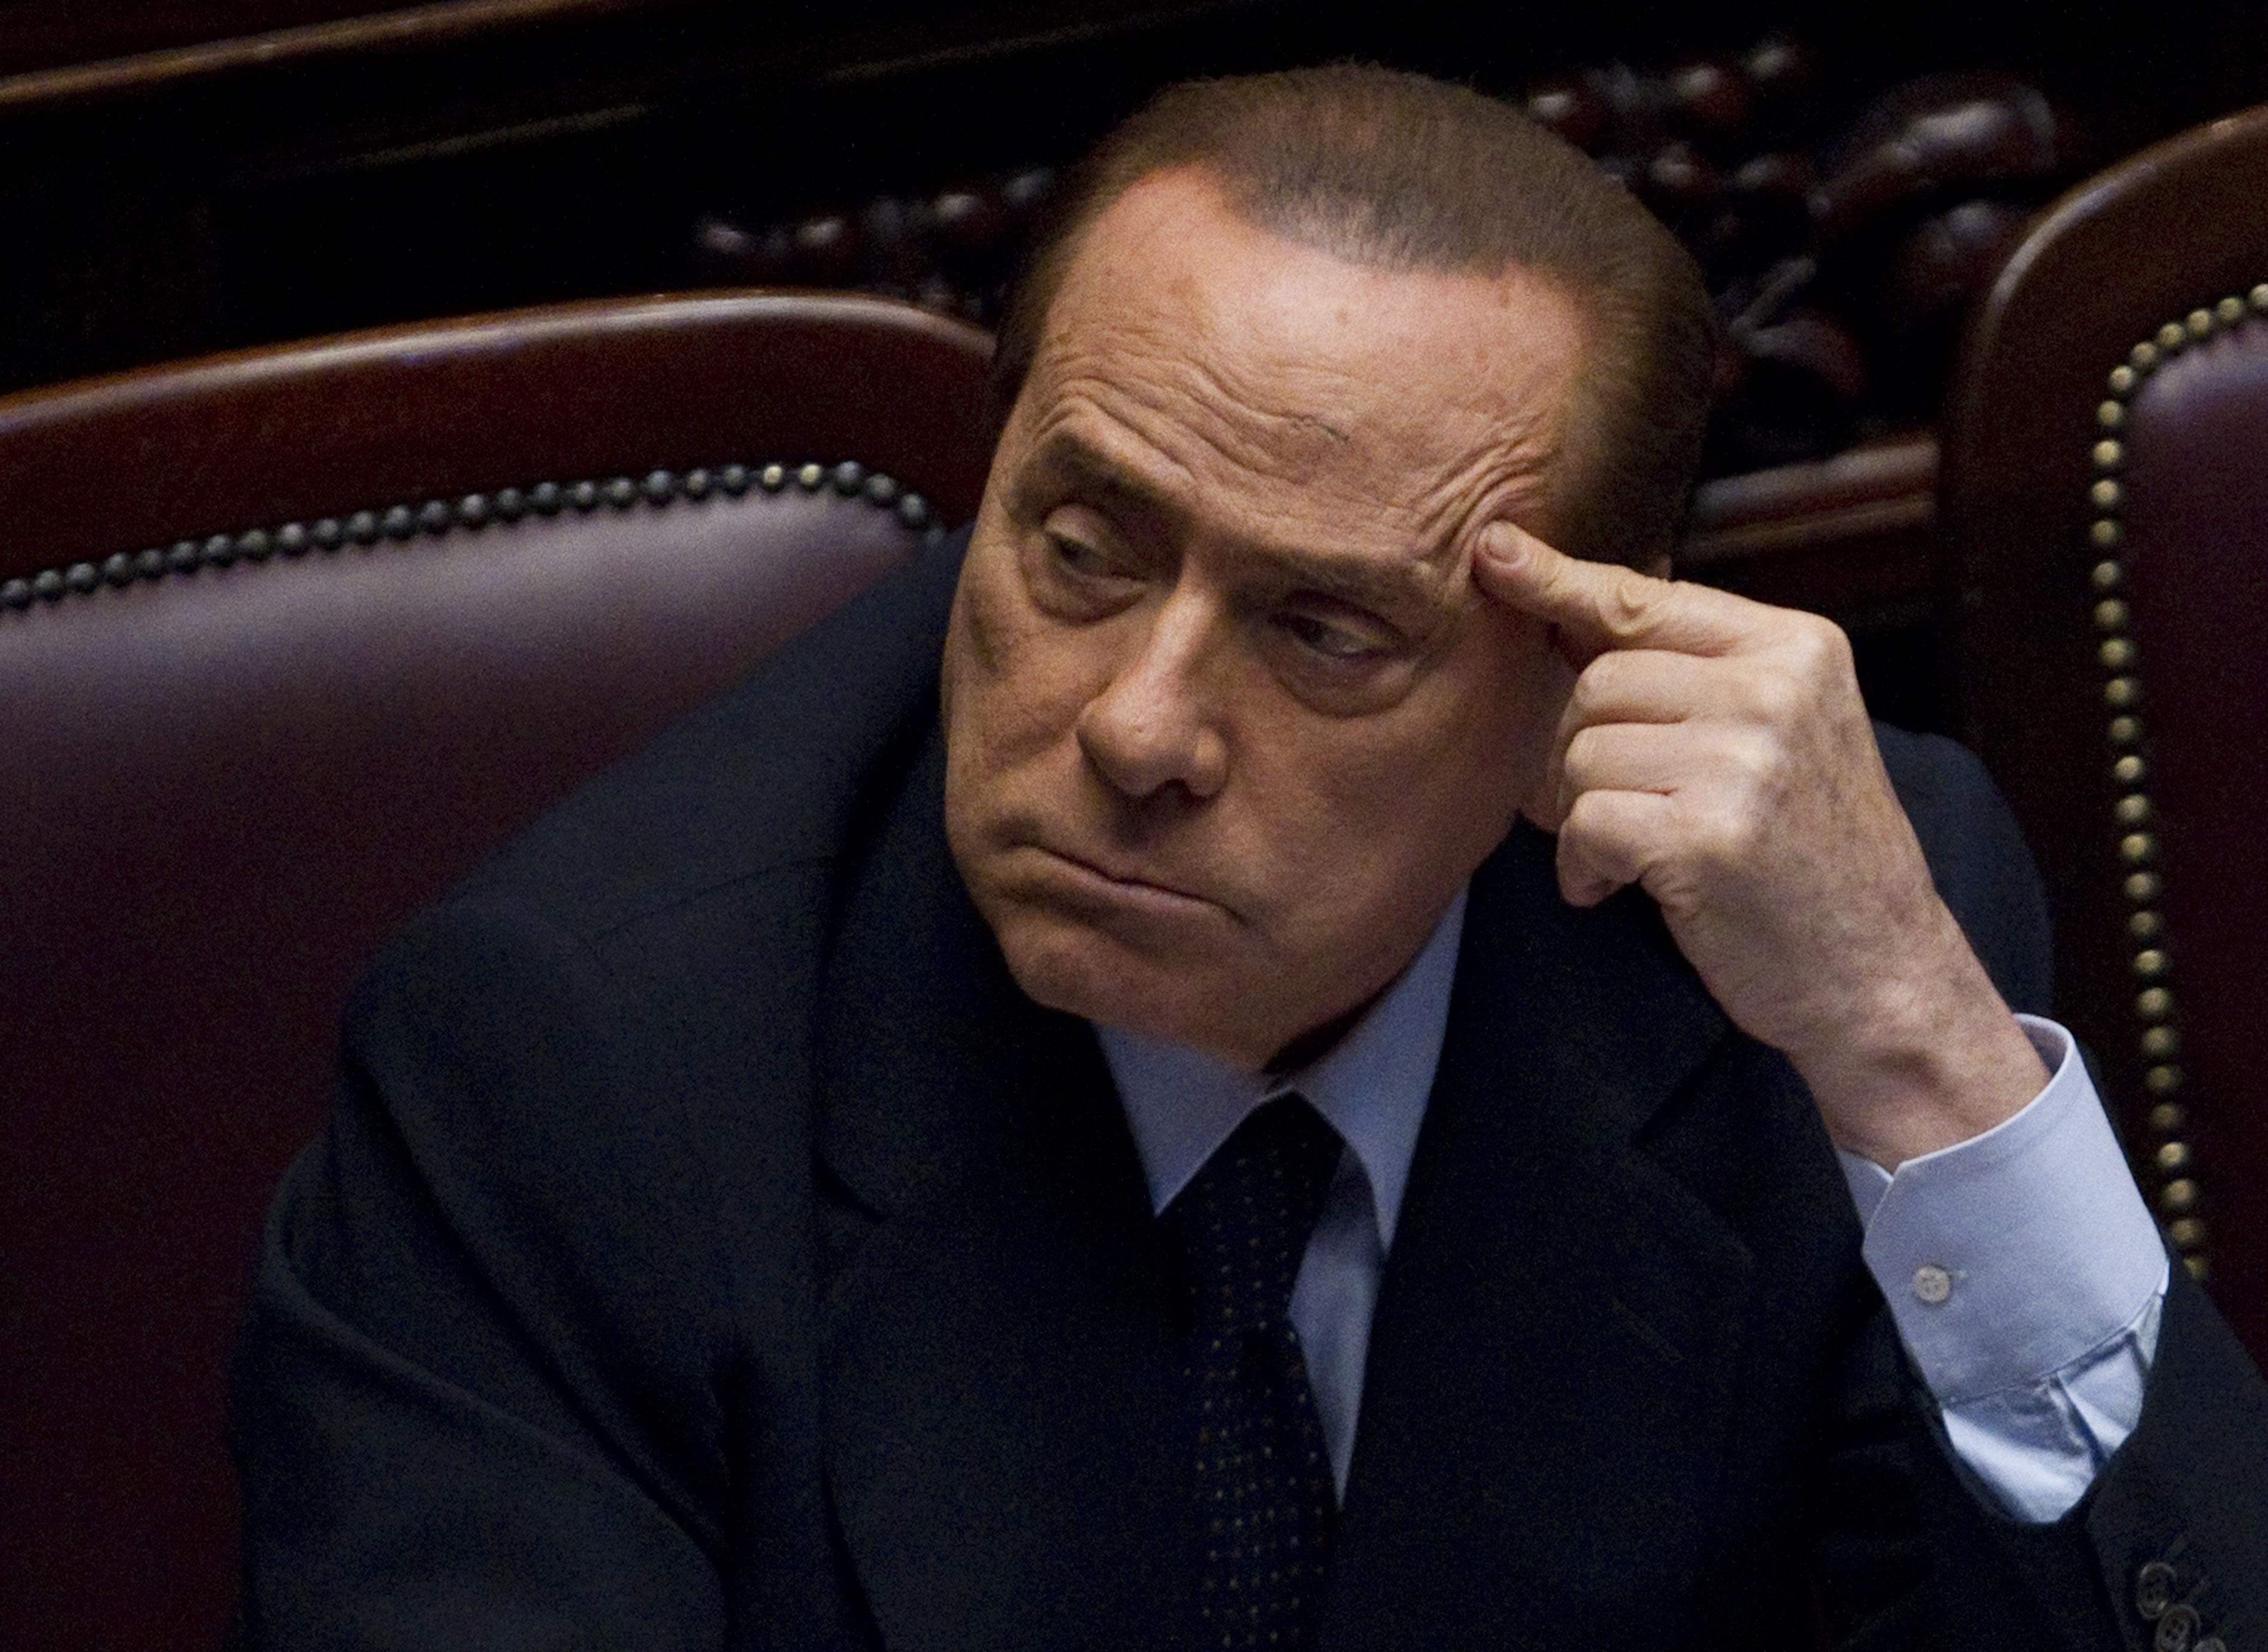 Berlusconi, Sexualbrott, Utpressning, Sex- och samlevnad, Brott och straff, Politik, Silvio Berlusconi, Italien, Prostitution, Köp av sexuell tjänst